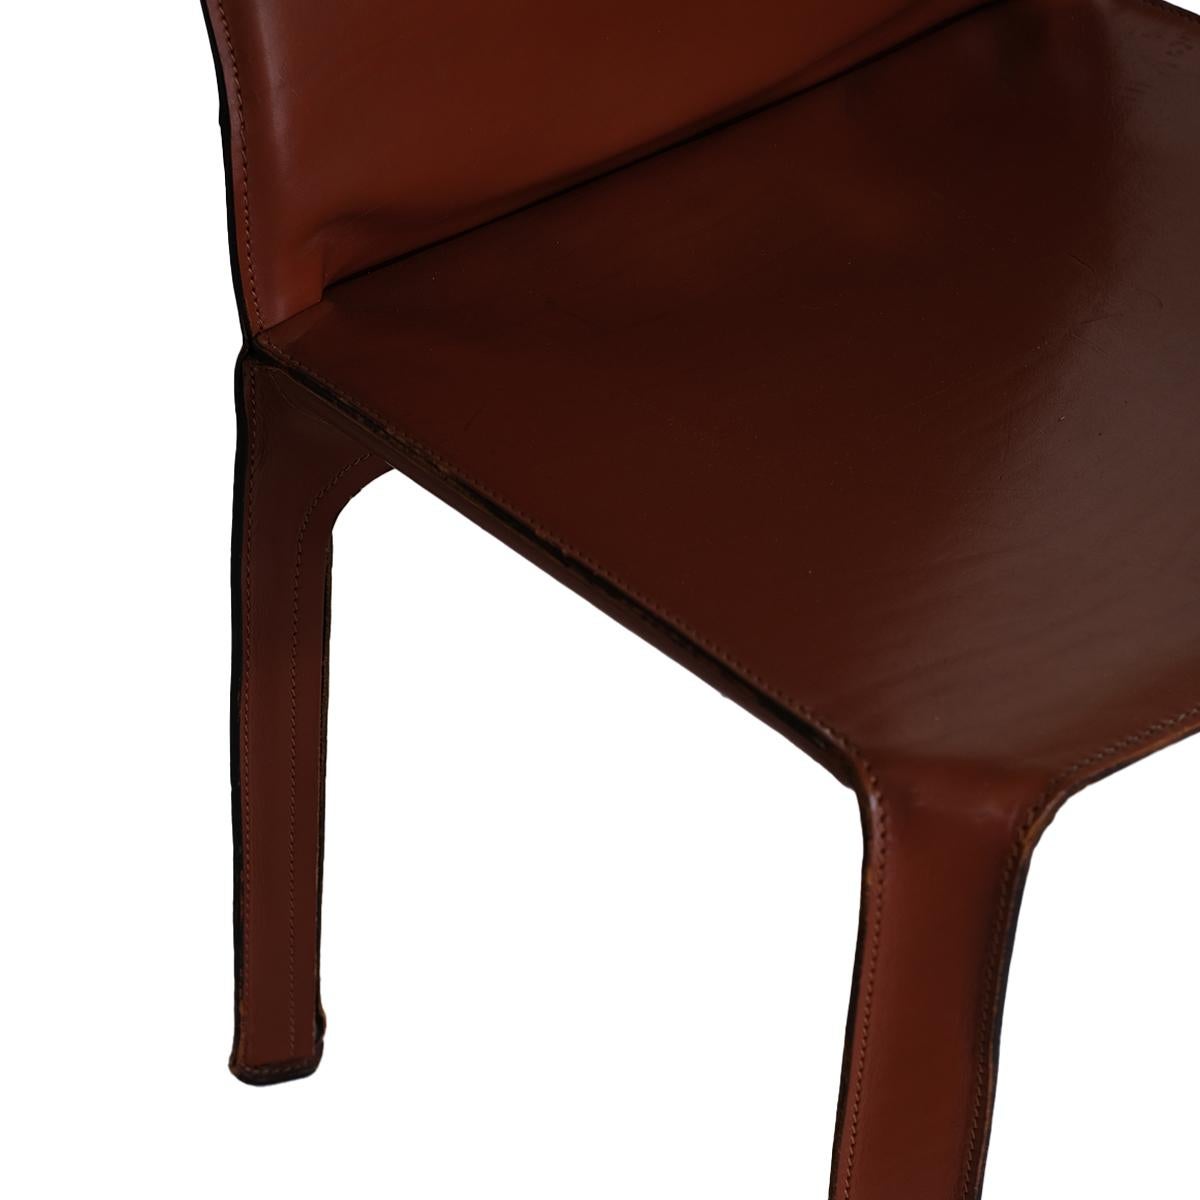 Voici les chaises Mario Bellini pour Cassina CAB 412 en cuir opulent : Améliorez votre espace de vie avec l'incarnation de l'ingéniosité et de l'artisanat italiens - les chaises Cassina CAB 412 de Mario Bellini, drapées dans un cuir somptueux. Ces